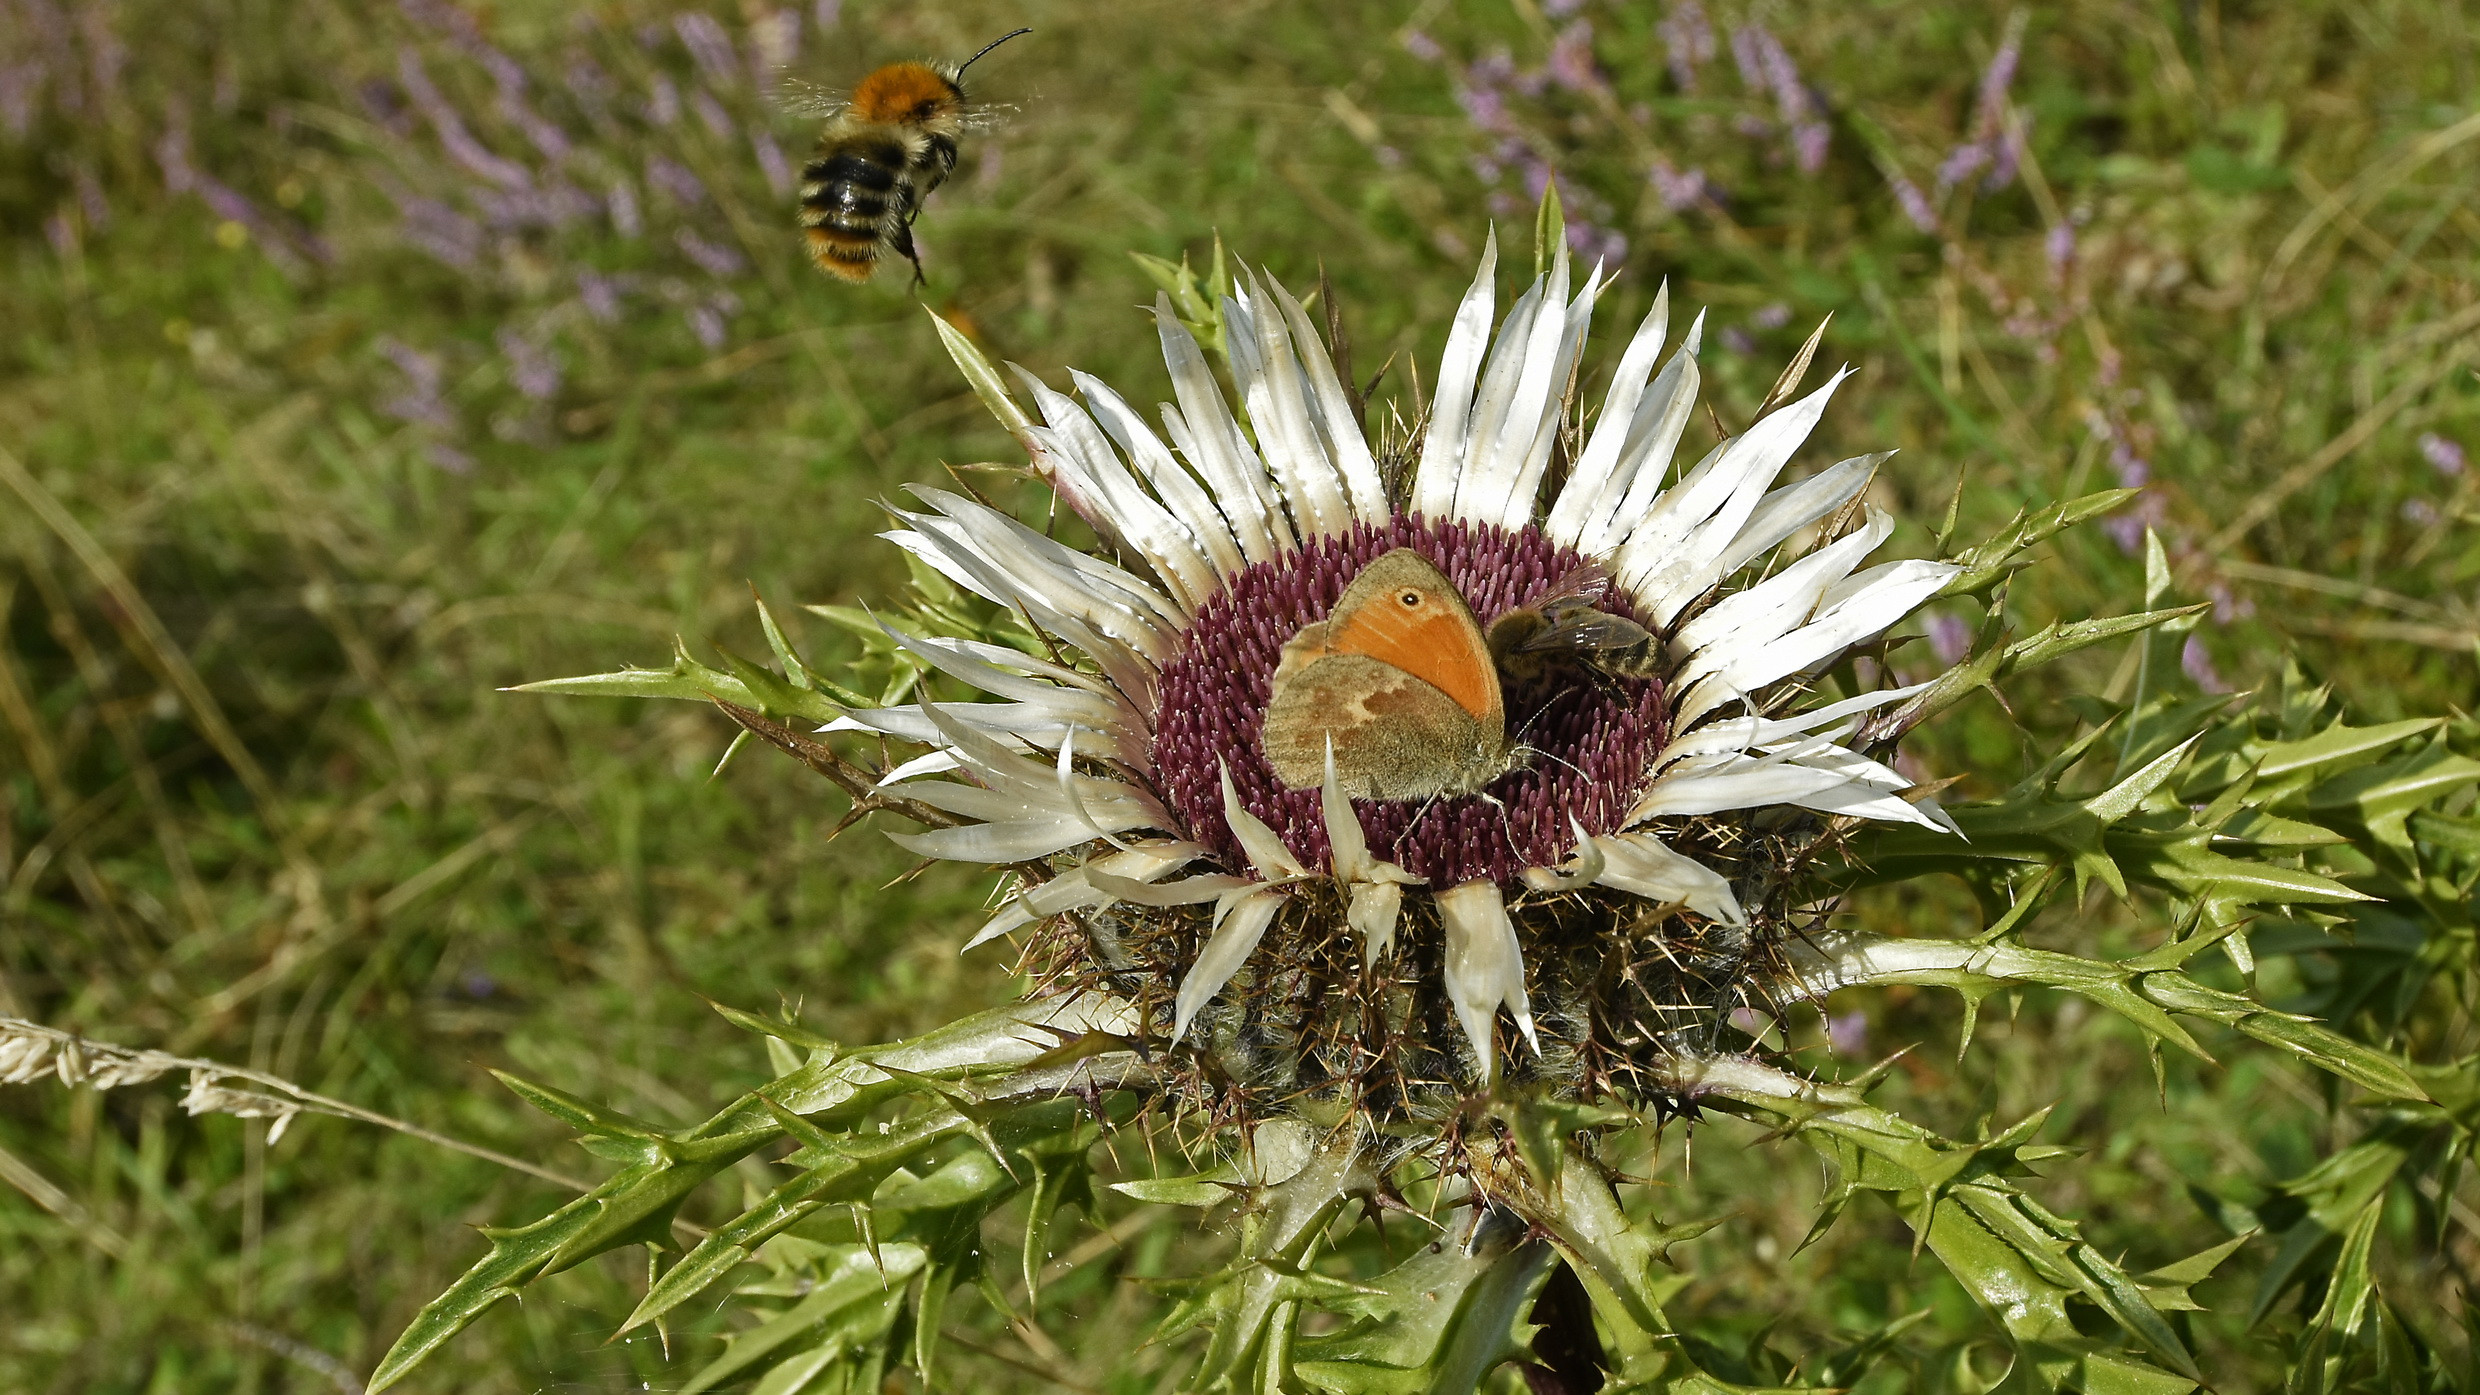  Silberdistel mit Hummel, Biene und Rotbraunem Waldvögelchen, Foto Reiner Enkelmann 